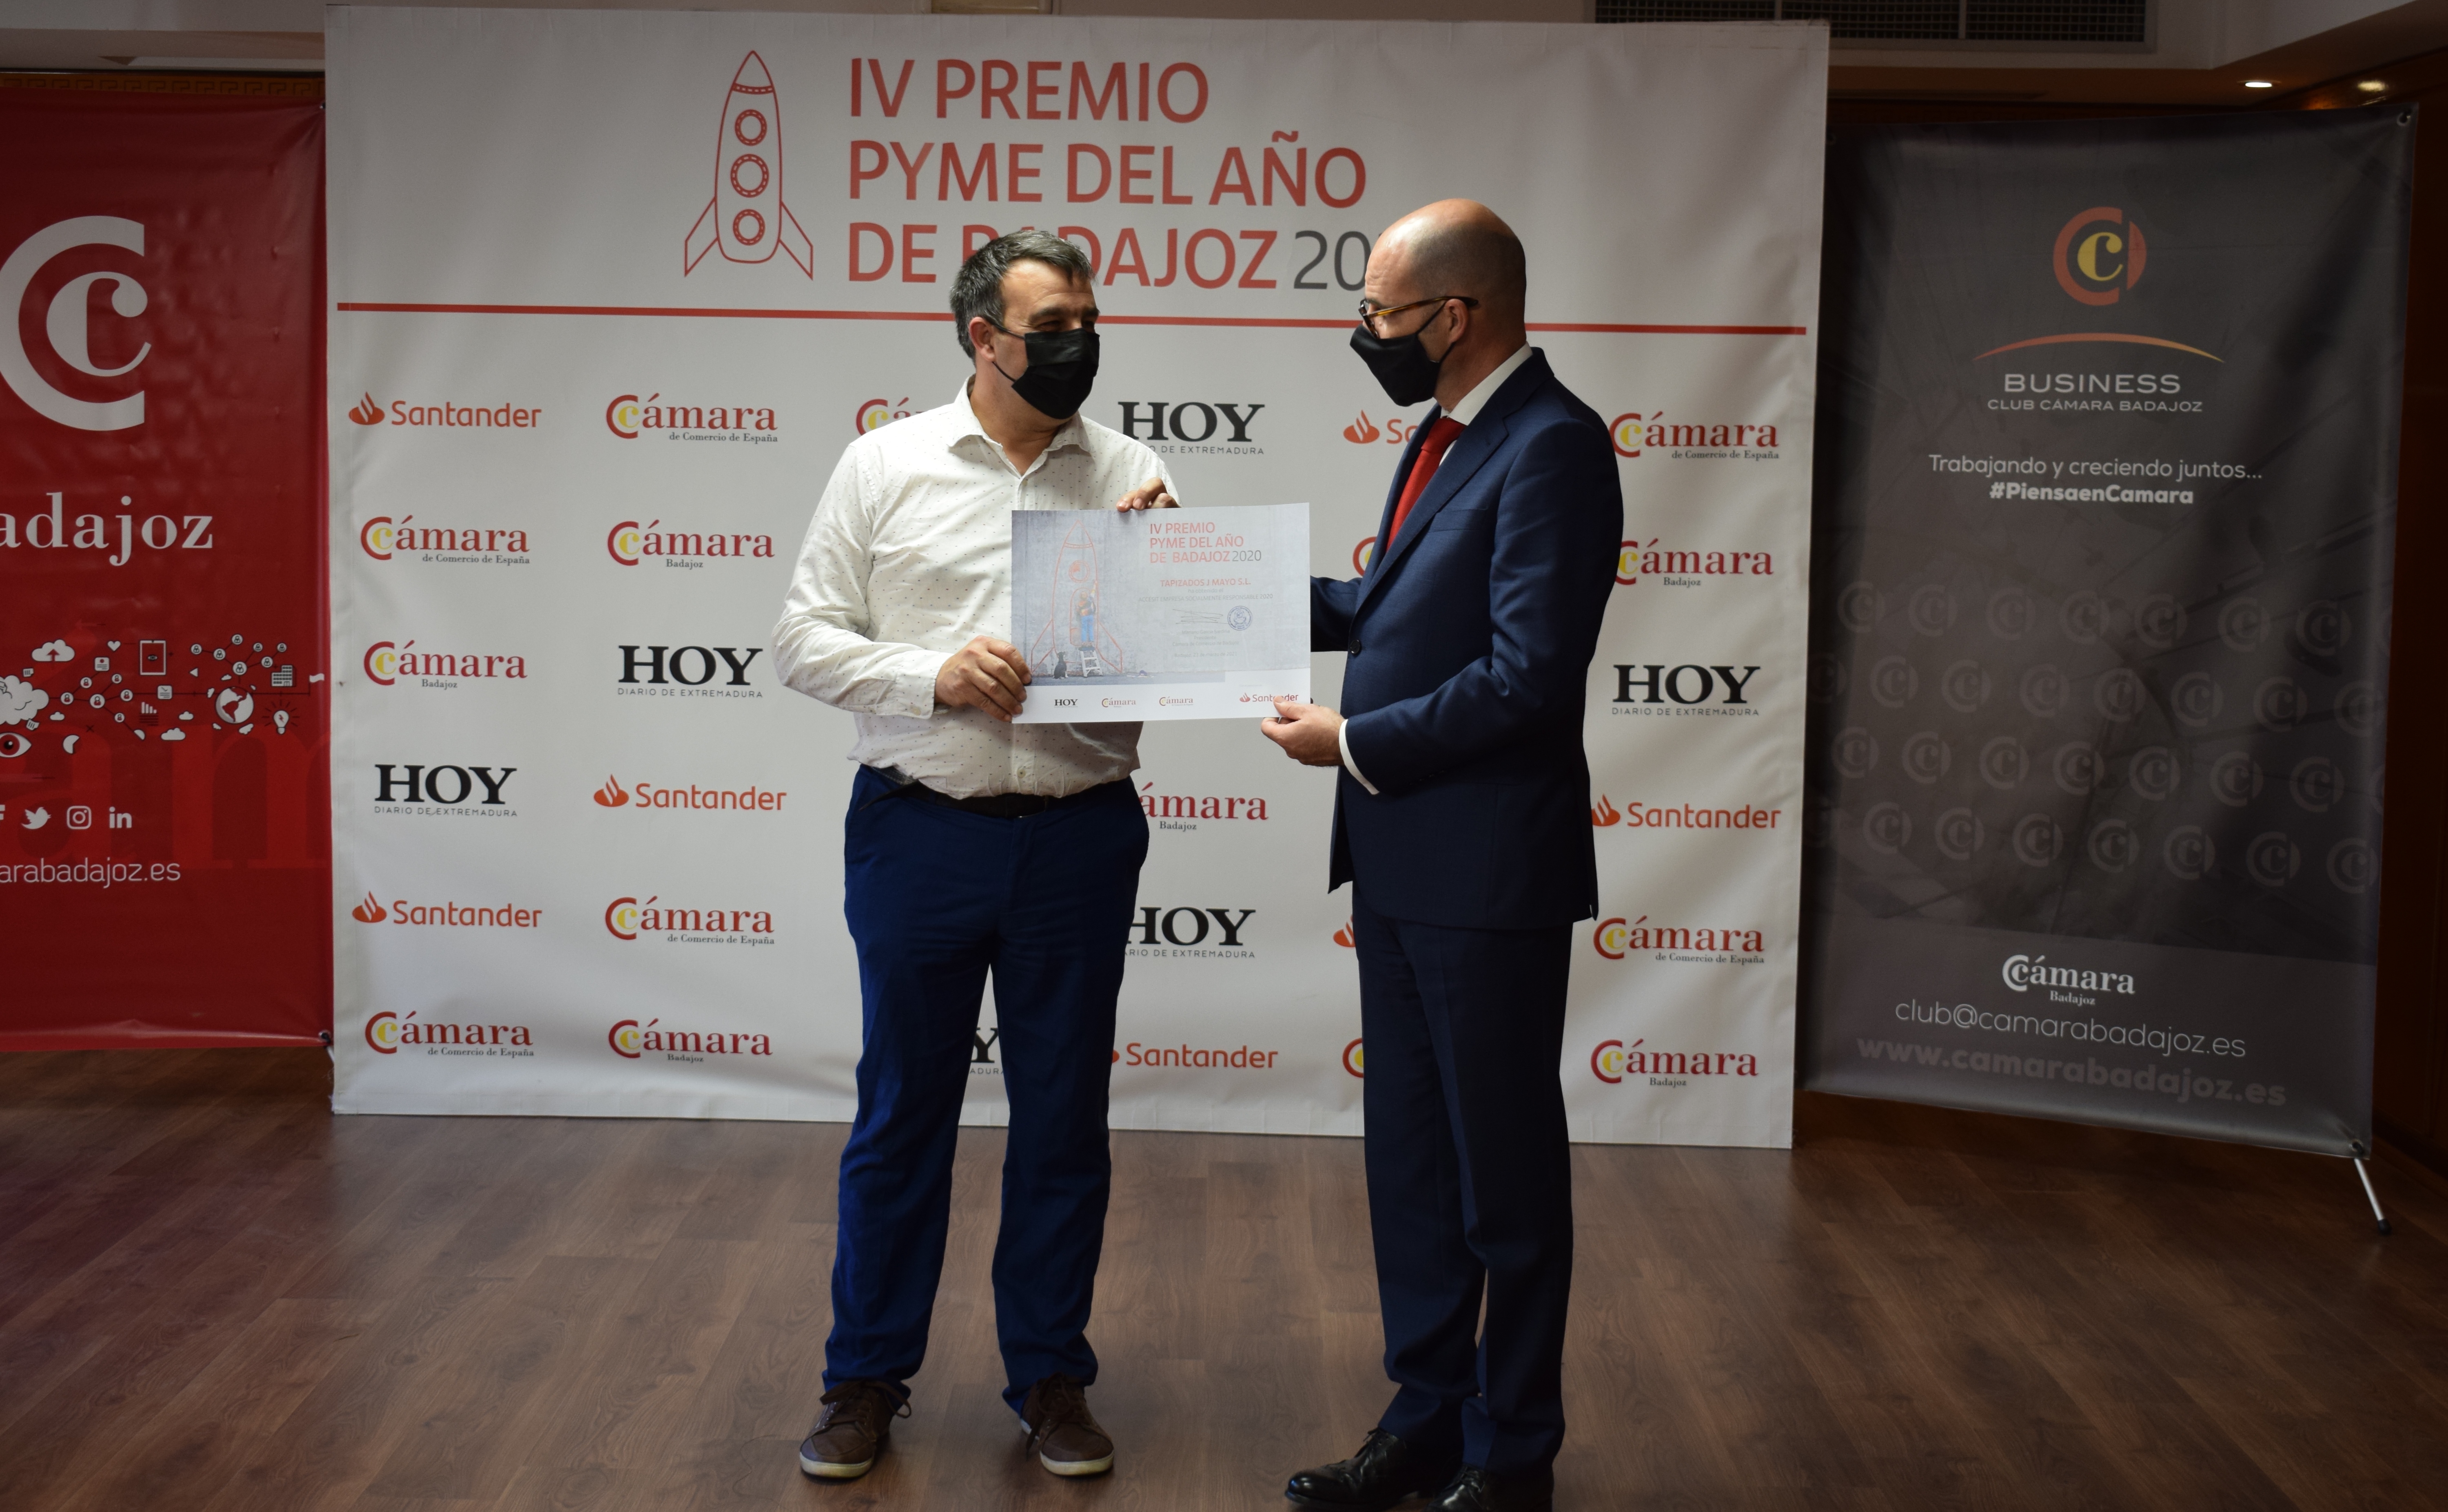 IAAS365 SL recoge el premio Pyme del año 2020 de Badajoz